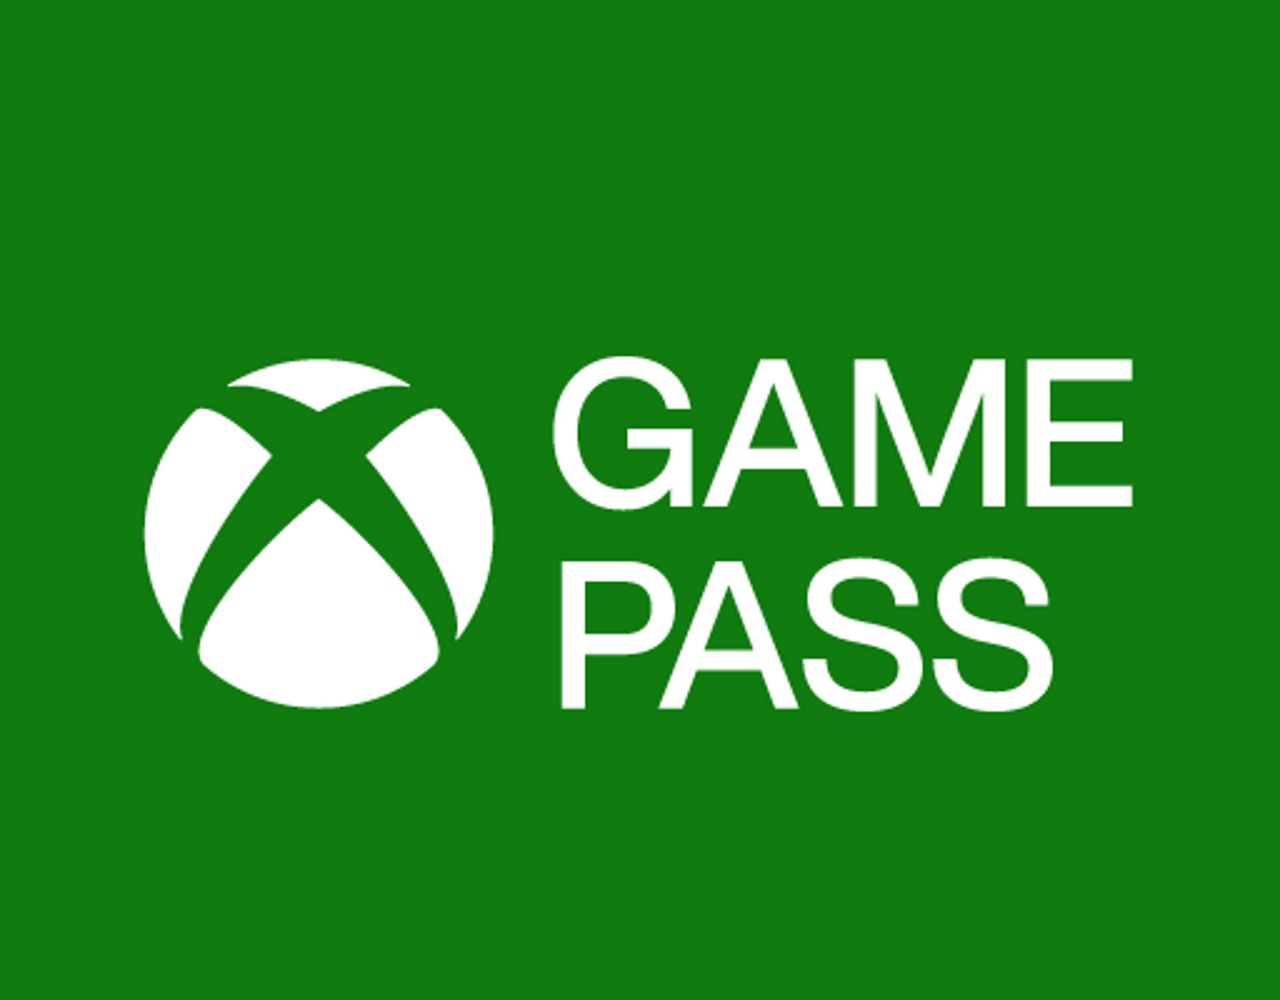 Xbox Game Pass otrzyma wiele polskich gier. Umowa już podpisana